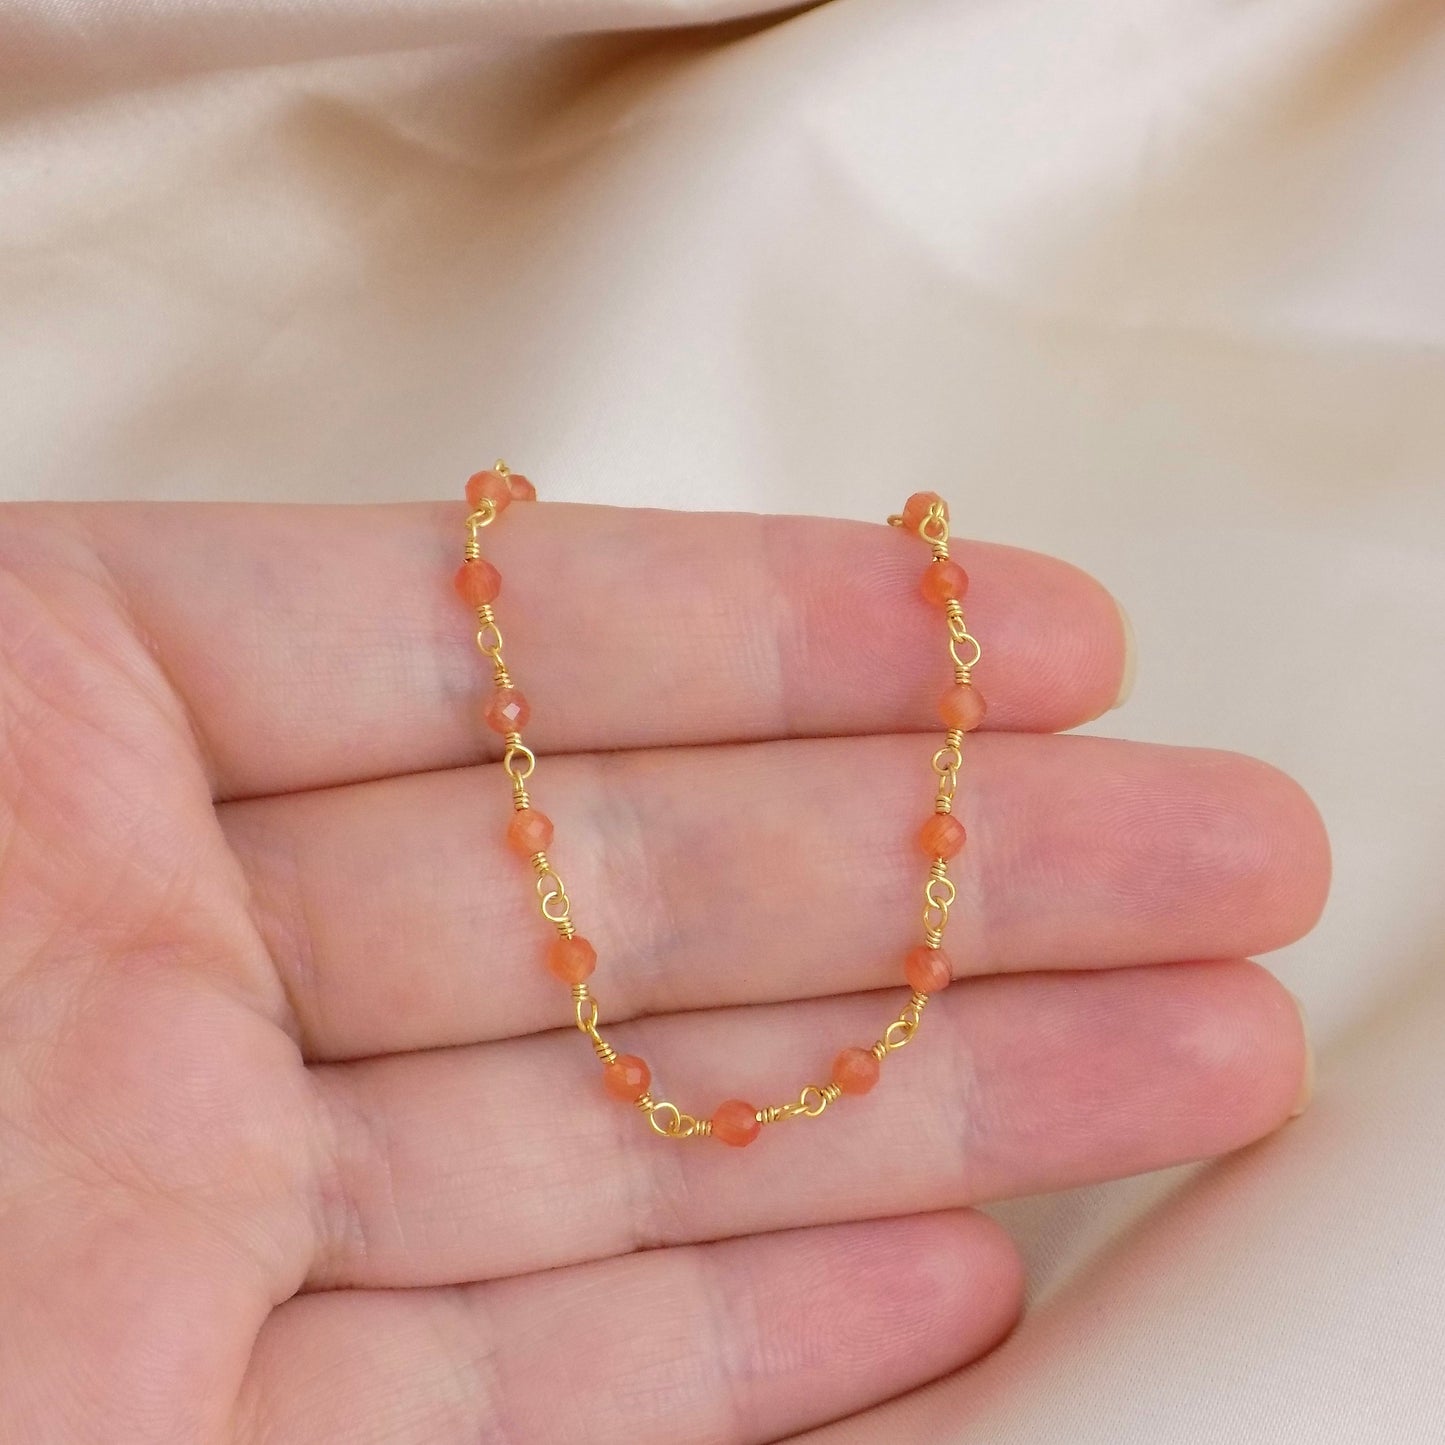 Tiny Carnelian Bracelet, Orange Stone Bracelet Gold, Dainty Super Thin Bracelet, Simple Bracelet Everyday, Gifts For Her, M6-141